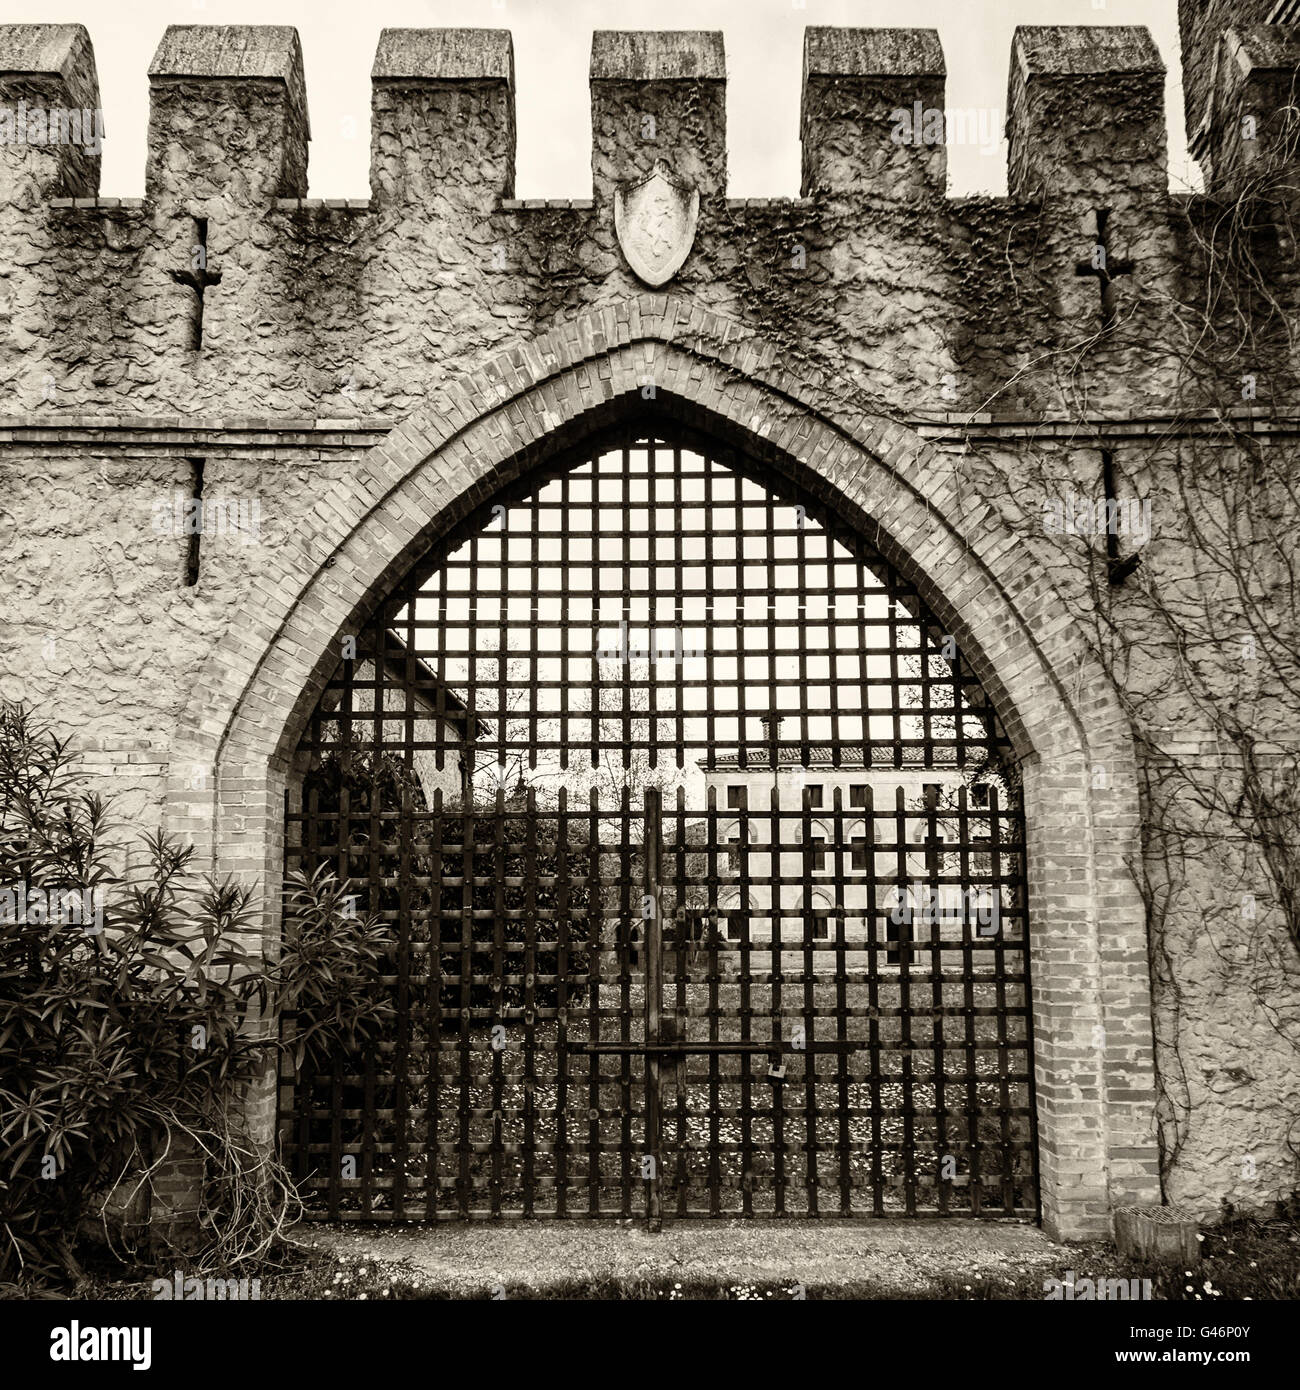 Puertas - Puertas Principales En Hierro Forjado D'castel, puertas hierro 